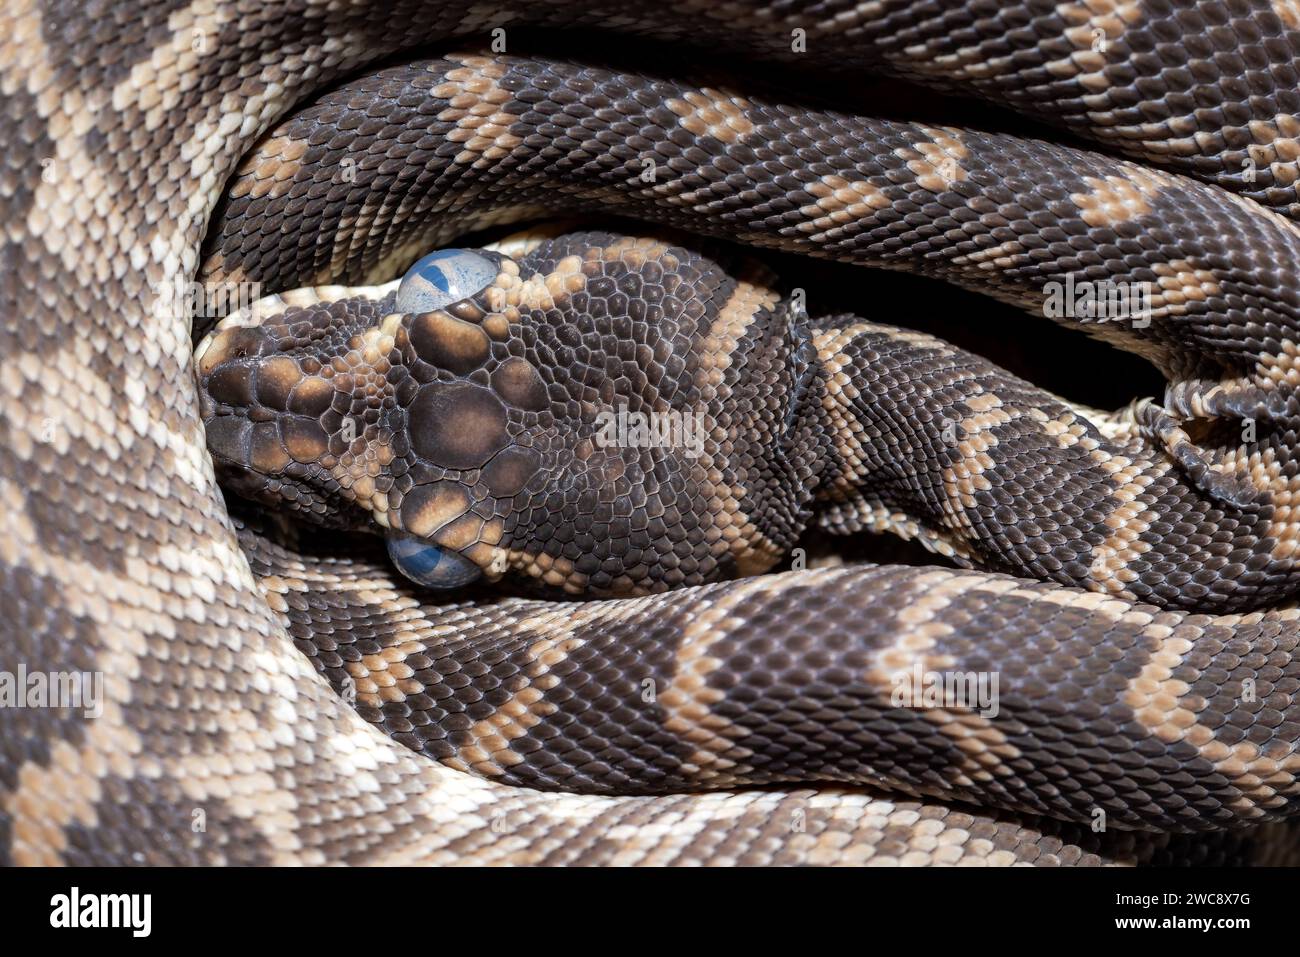 Primo piano di Python australiano con scaglie ruvide e occhi opachi prima di desquamare la pelle. Foto Stock